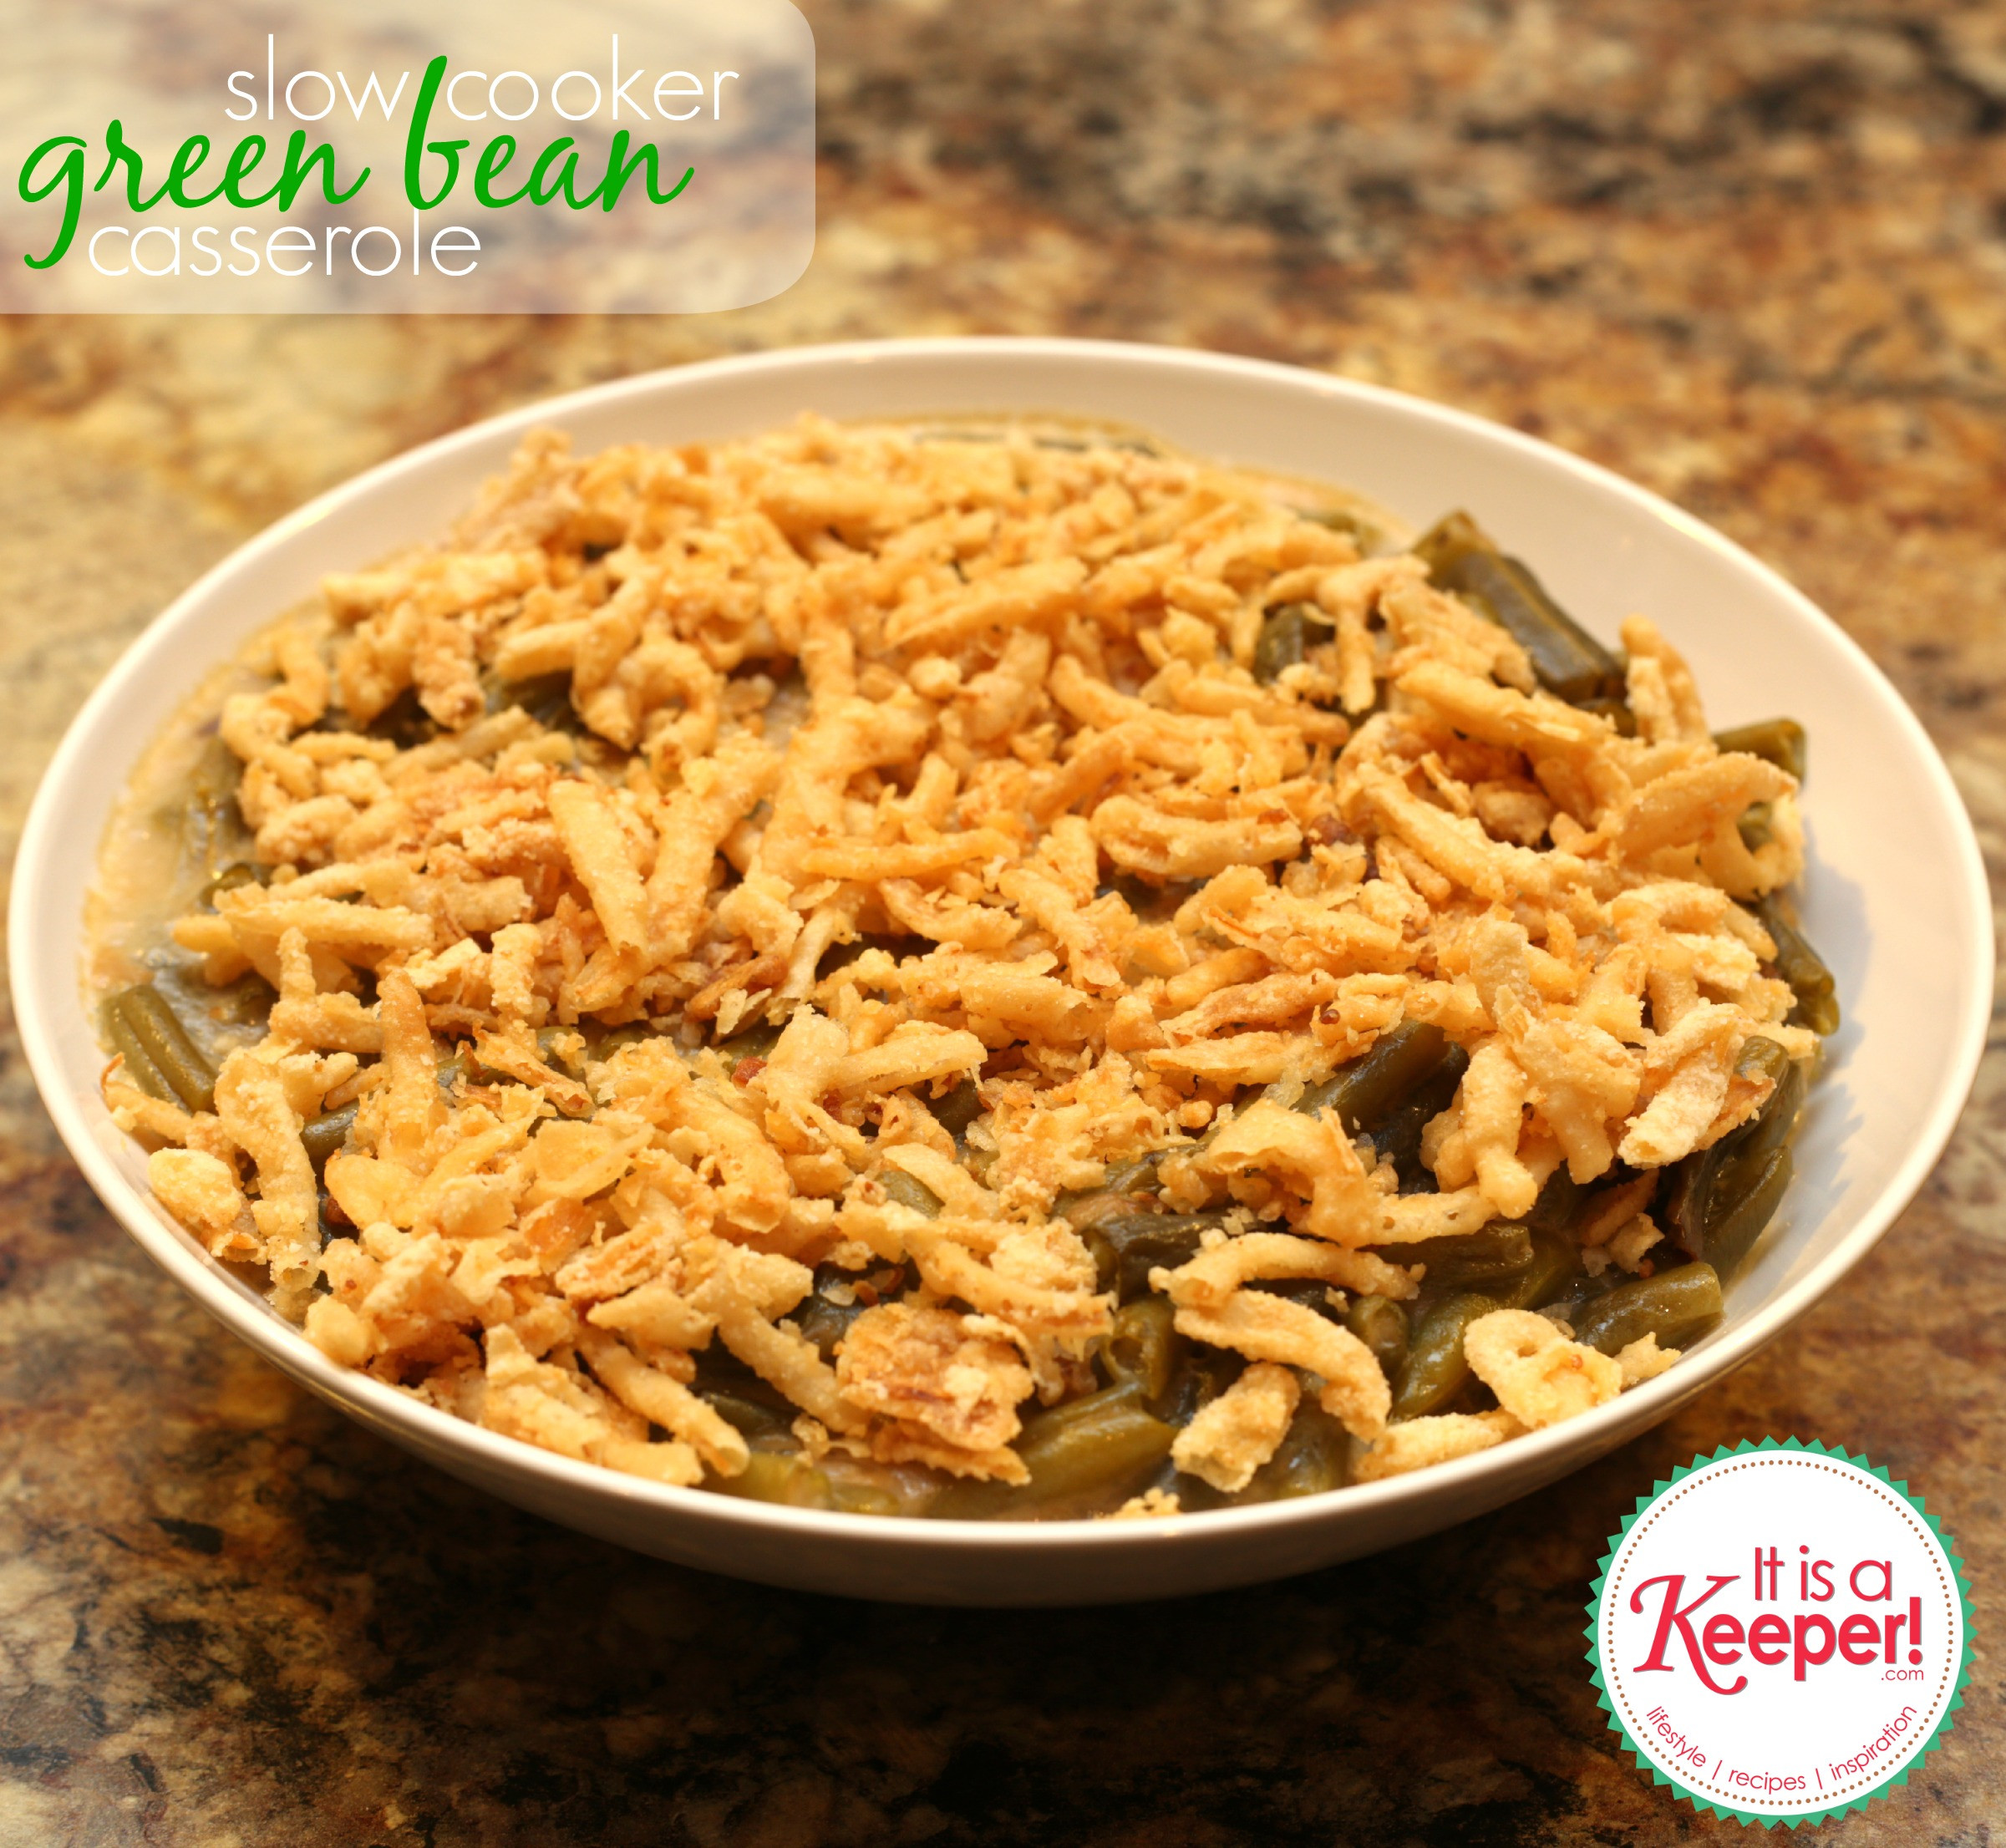 Green Bean Casserole In Crock Pot
 Easy Crock Pot Recipes Green Bean Casserole It s a Keeper